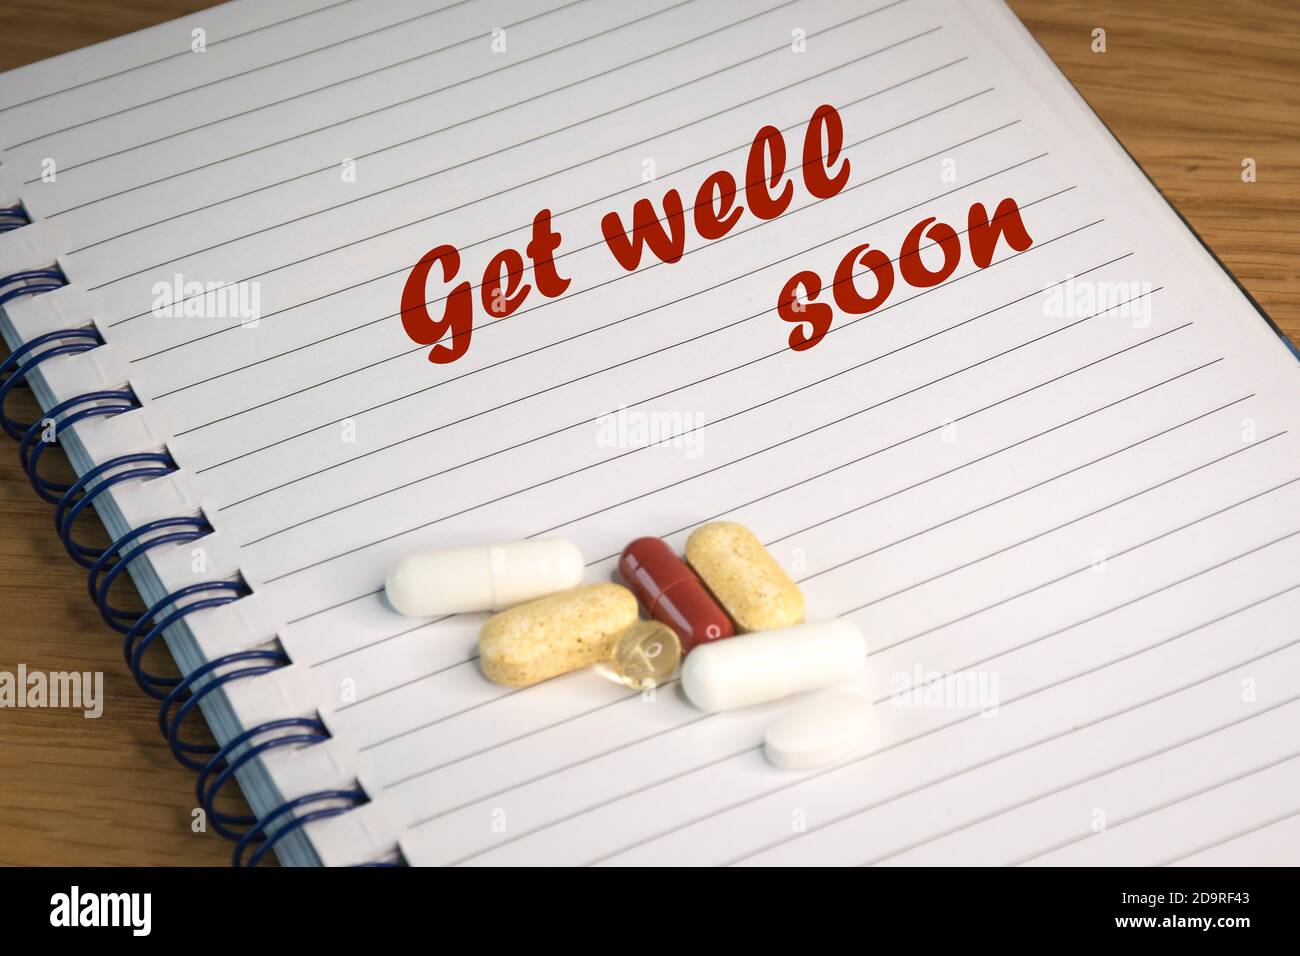 Testo in inglese "Get well soon" ispirato alle pandemie di Coronavirus in tutto il mondo. Il testo è scritto su carta rigata. Foto Stock